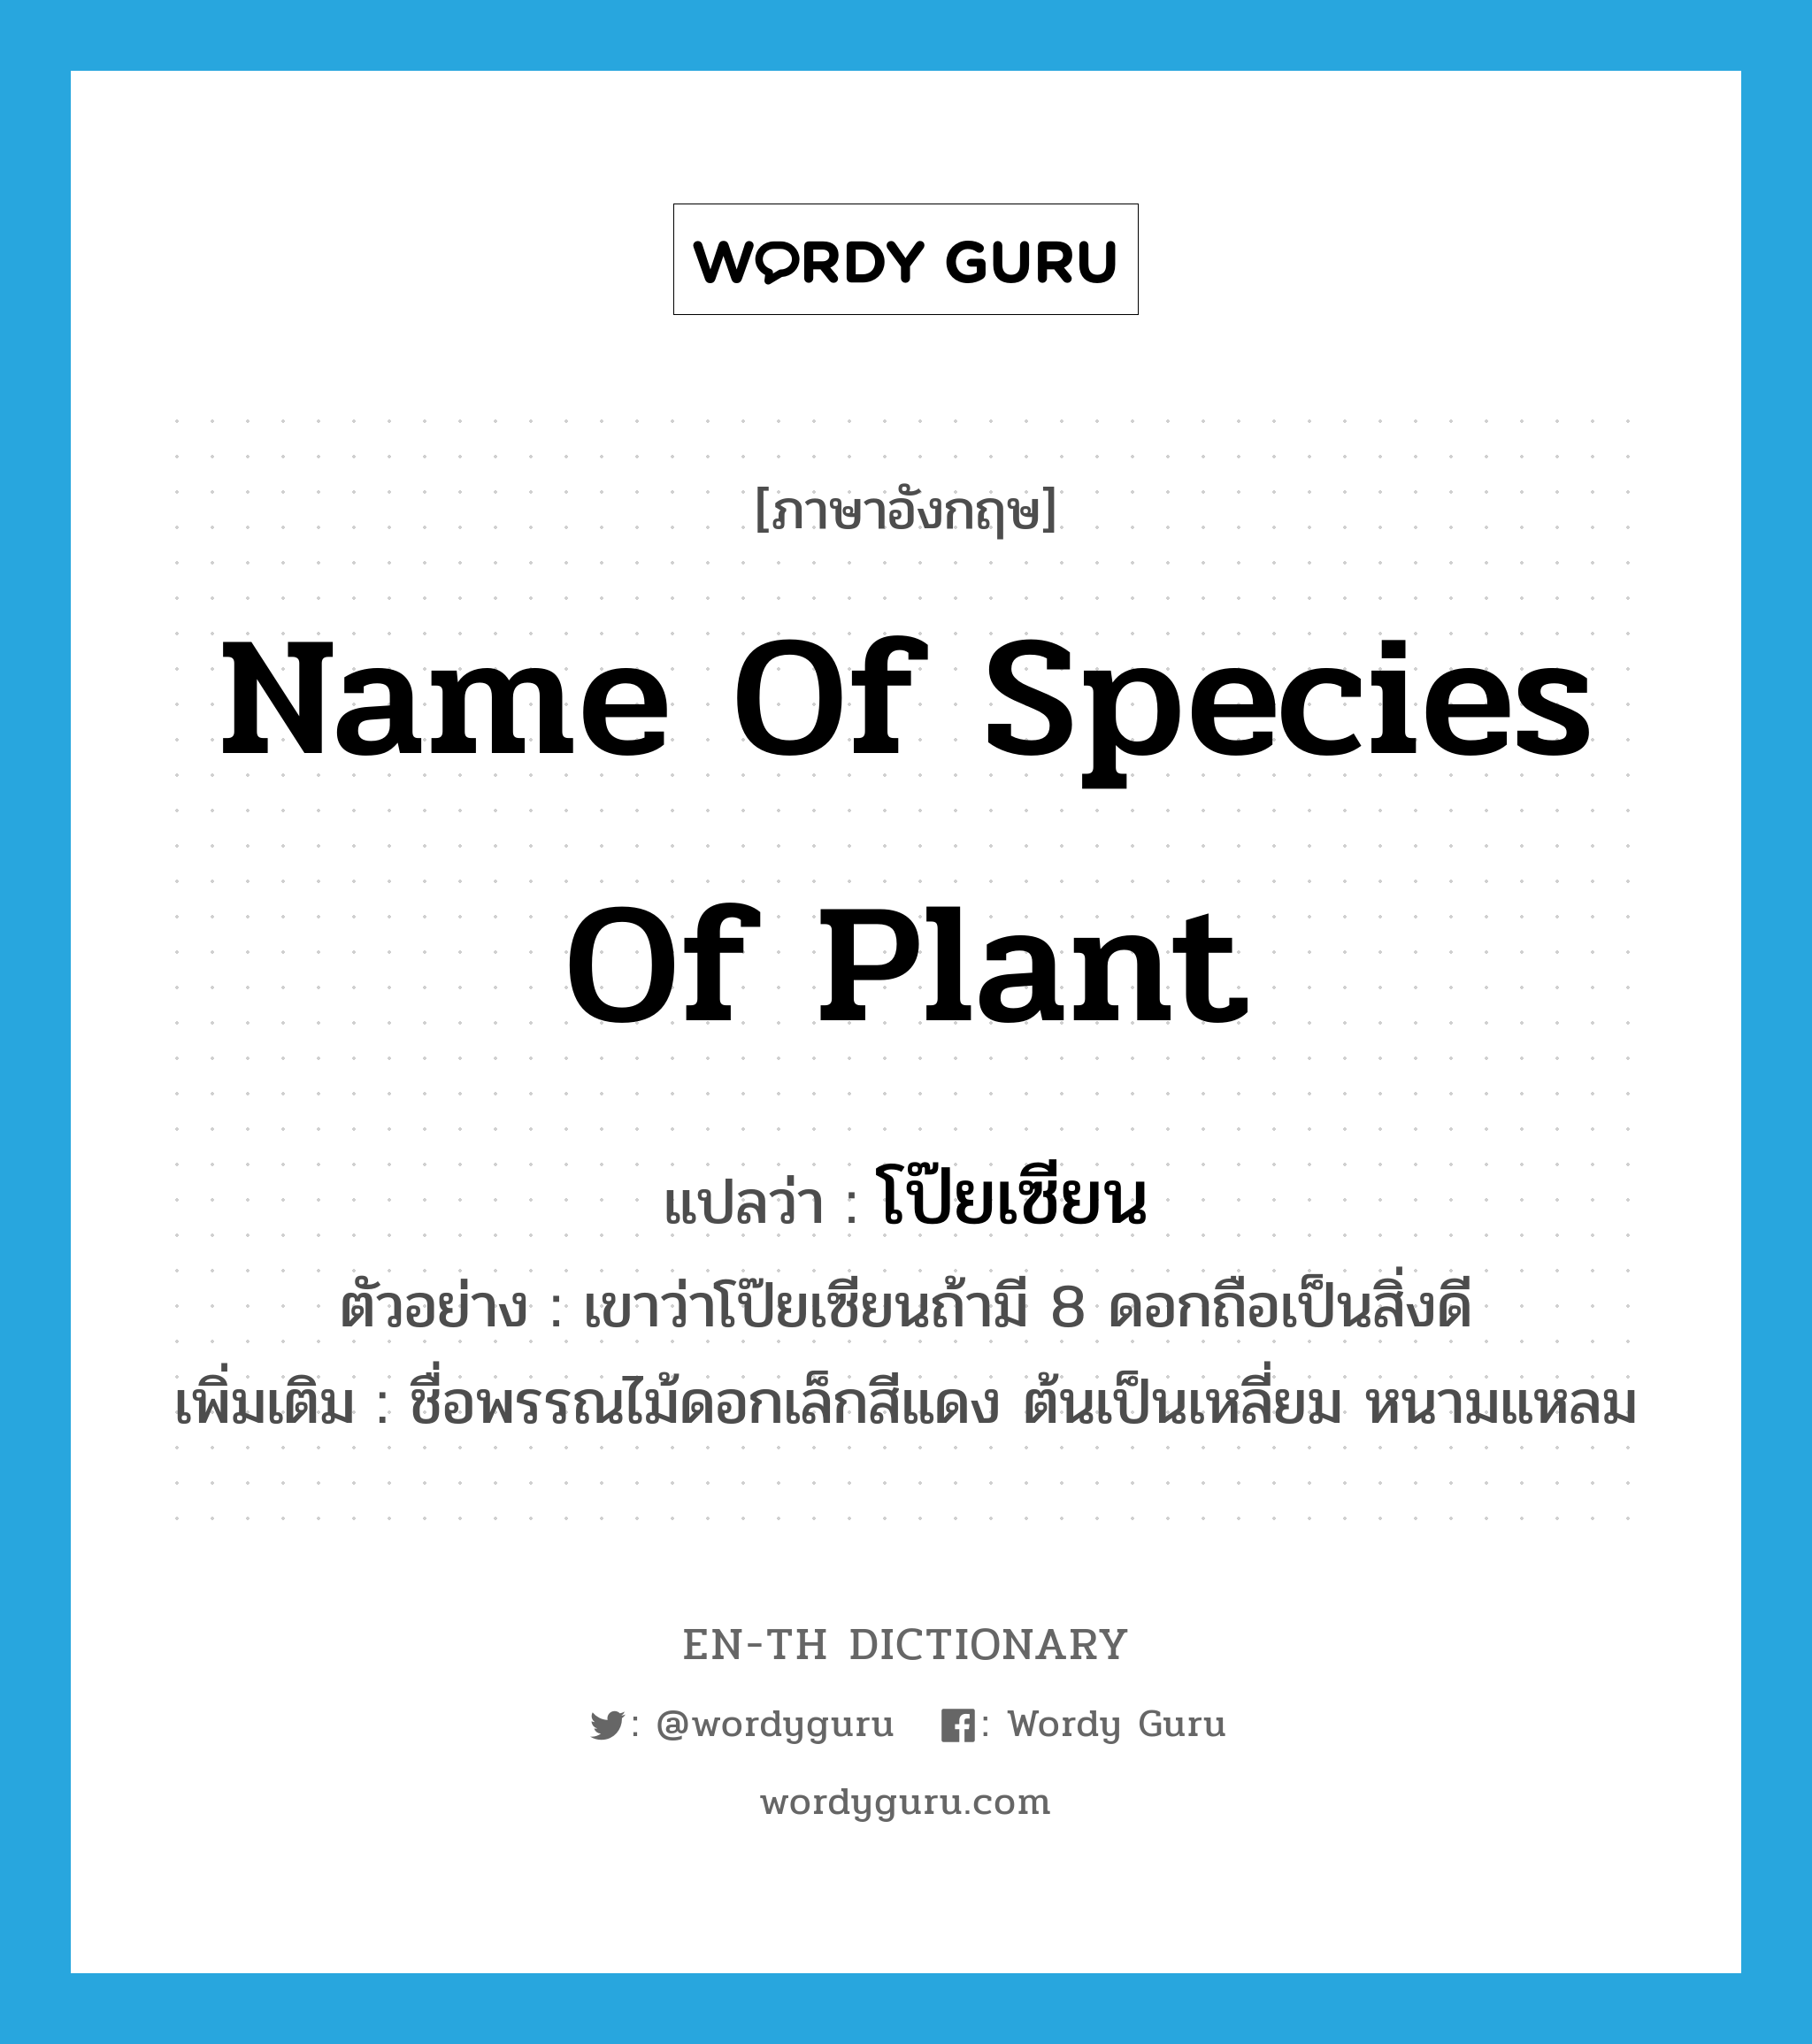 โป๊ยเซียน ภาษาอังกฤษ?, คำศัพท์ภาษาอังกฤษ โป๊ยเซียน แปลว่า name of species of plant ประเภท N ตัวอย่าง เขาว่าโป๊ยเซียนถ้ามี 8 ดอกถือเป็นสิ่งดี เพิ่มเติม ชื่อพรรณไม้ดอกเล็กสีแดง ต้นเป็นเหลี่ยม หนามแหลม หมวด N